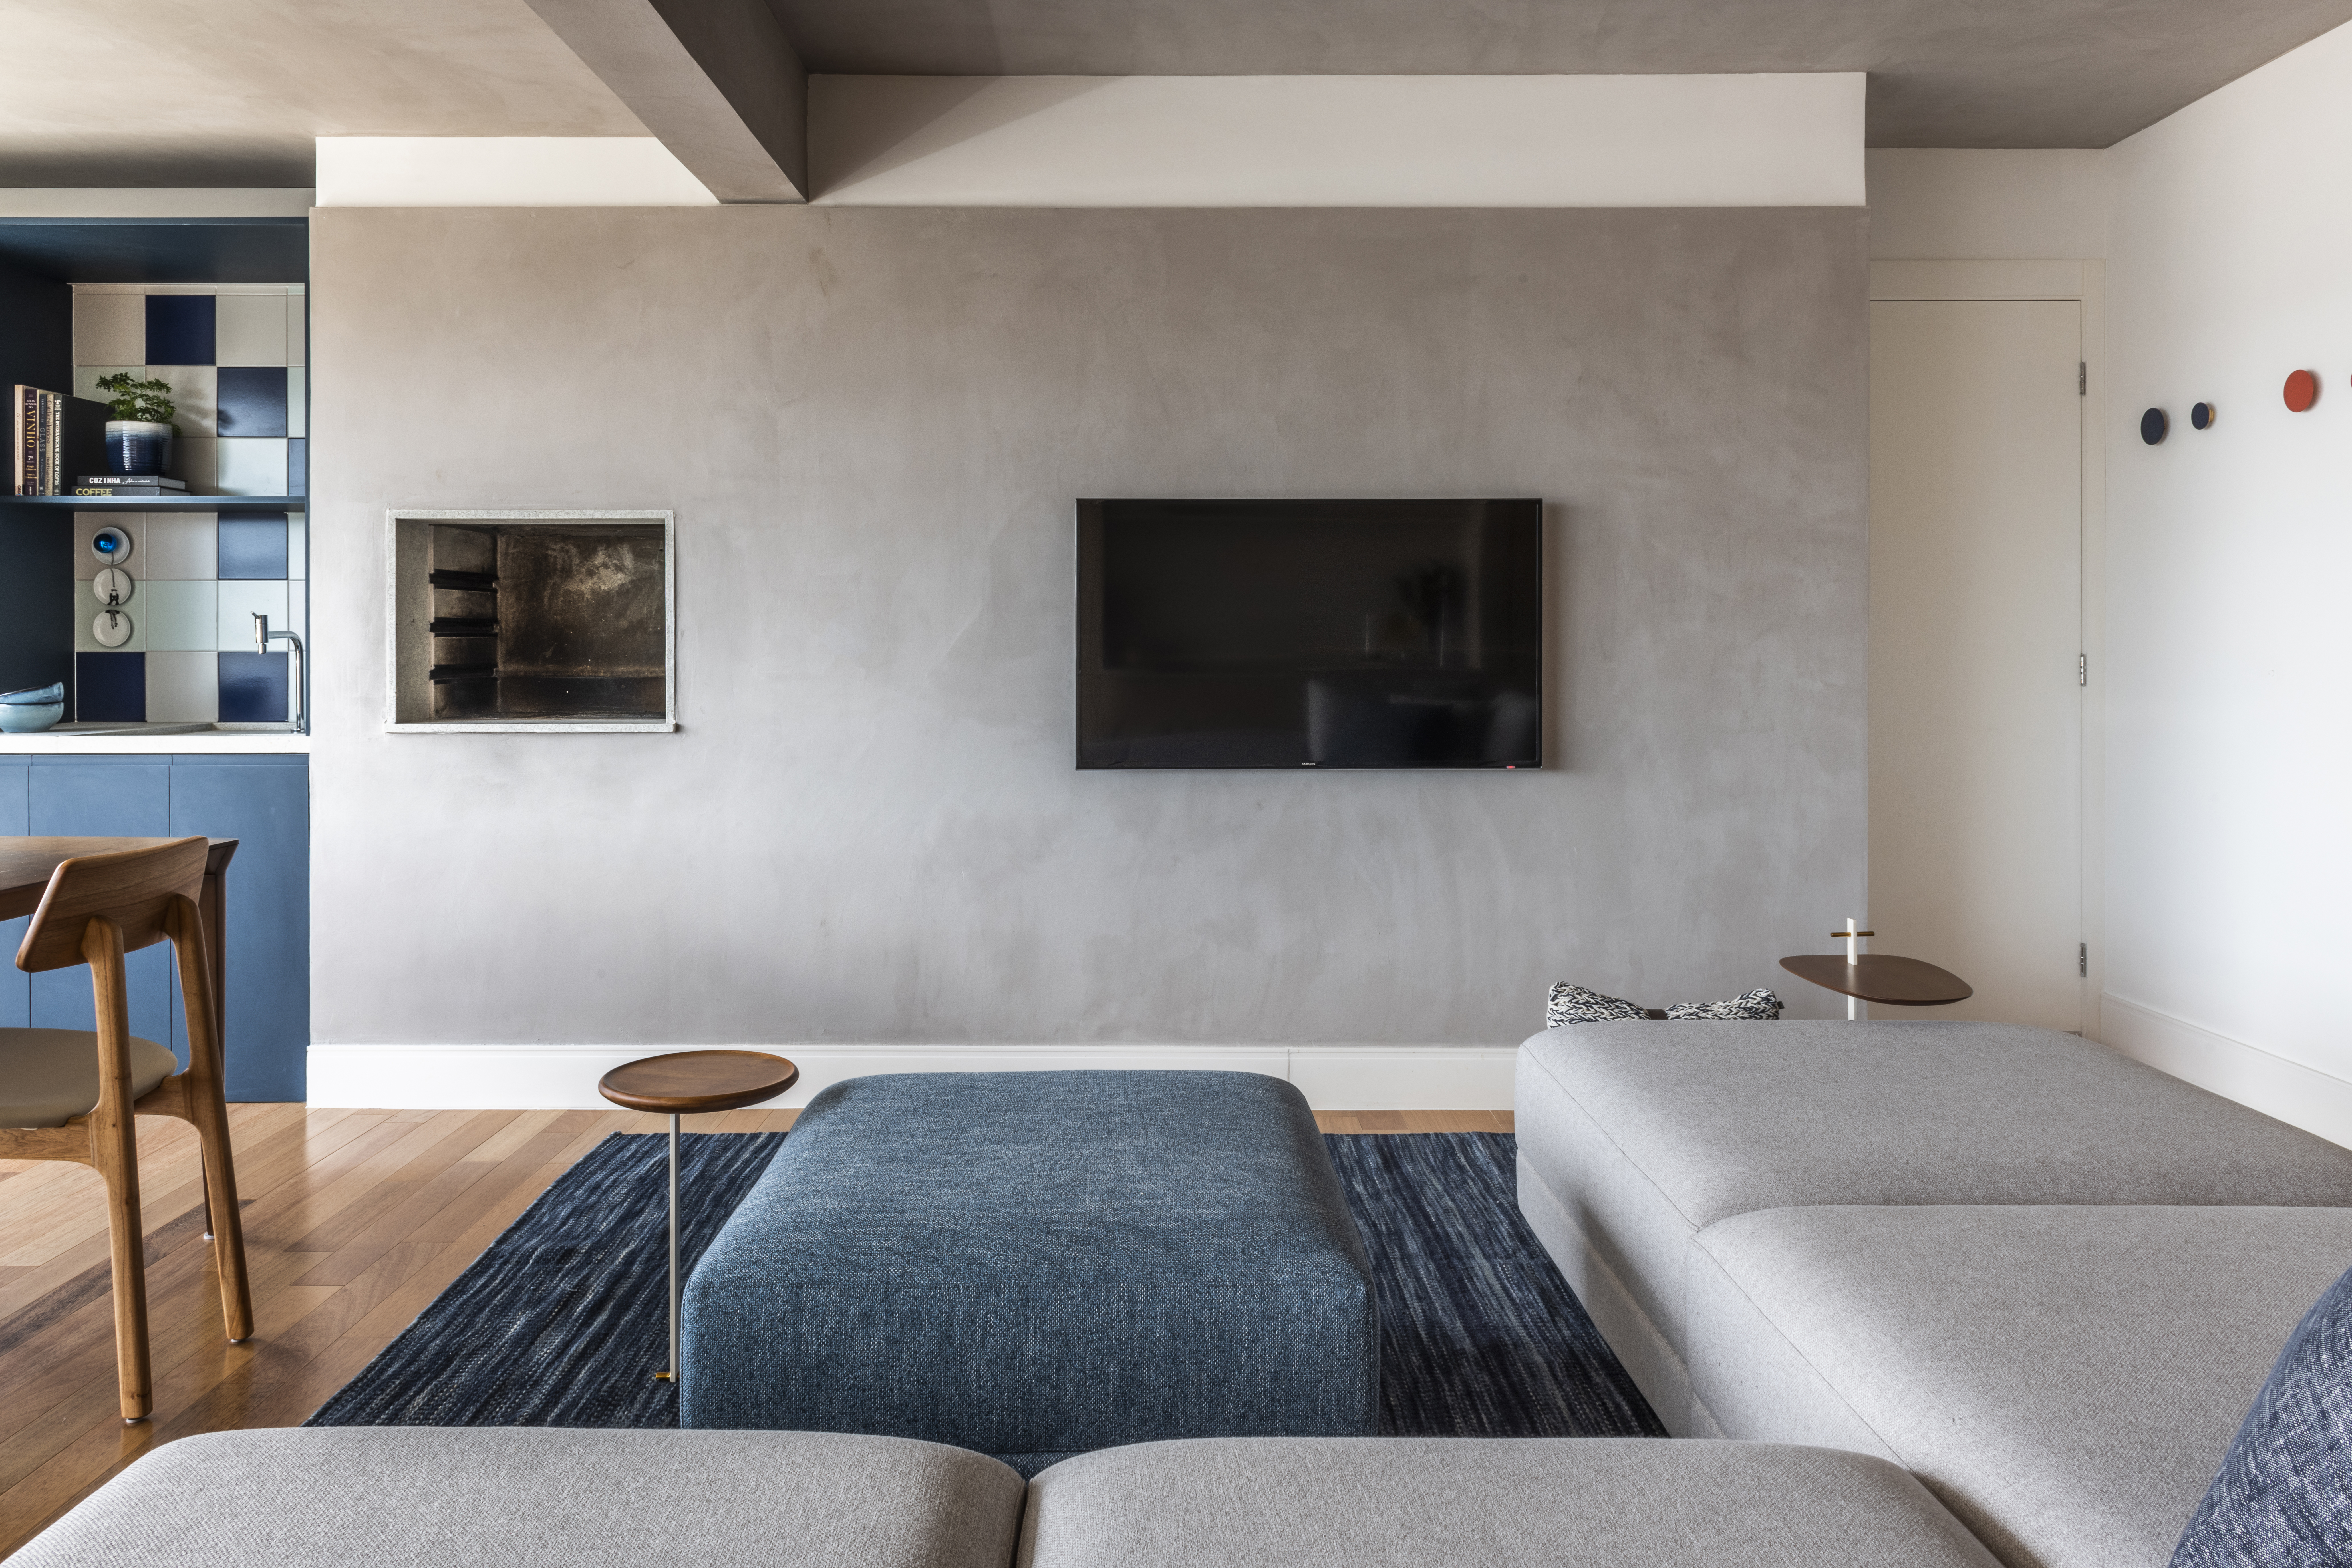 Apartamento de 130m² com projeto de M² Arquitetura. Na foto, sala de estar com sofá cinza, pufe azul e parede de cimento queimado.